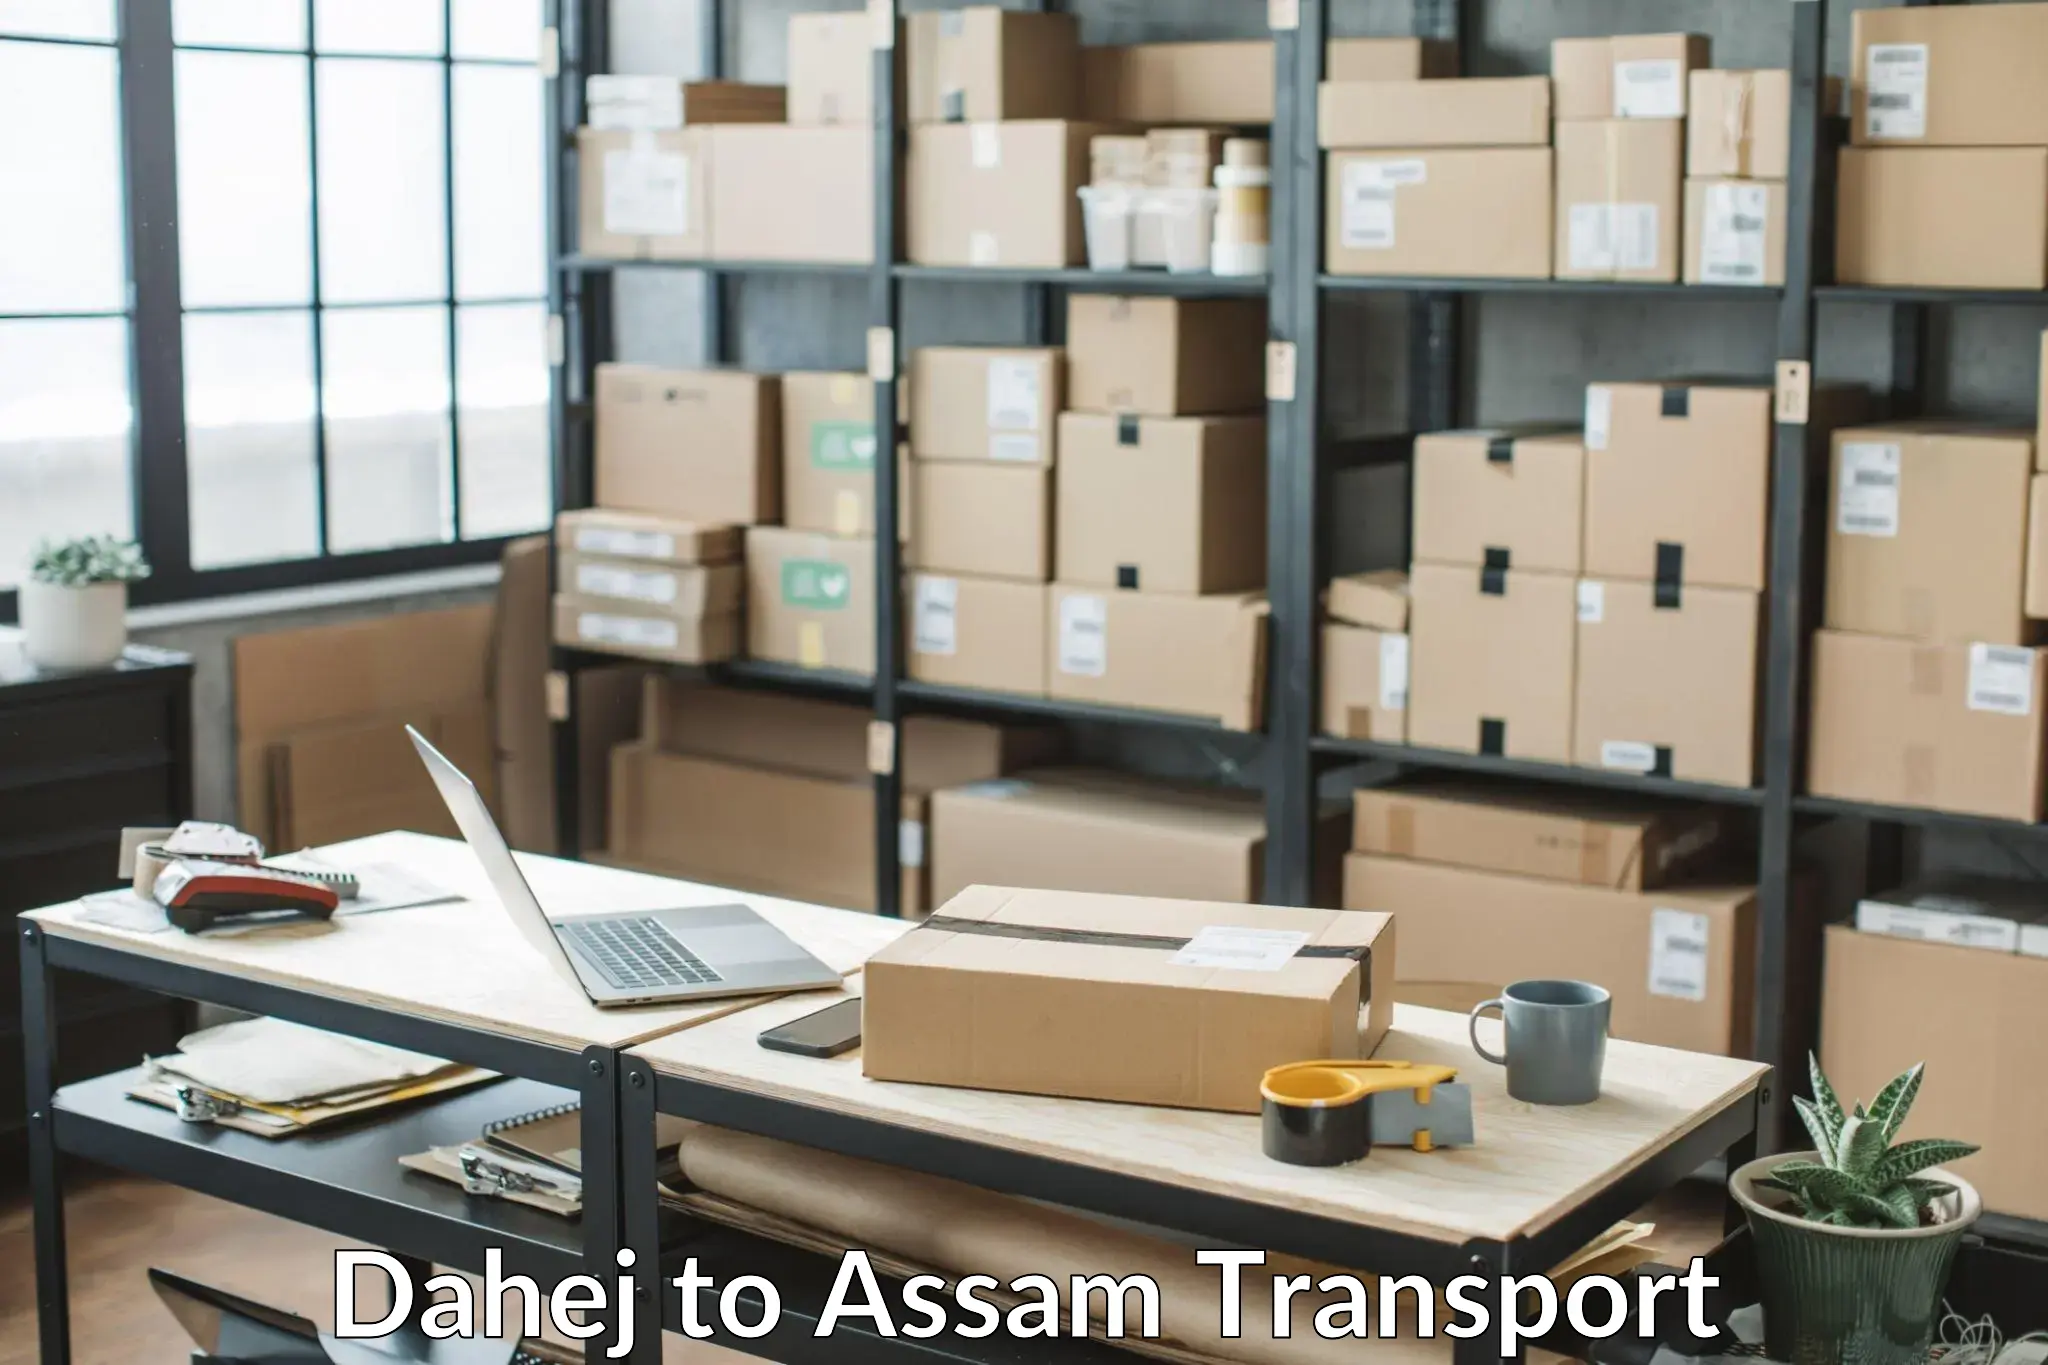 Nearest transport service Dahej to Behali